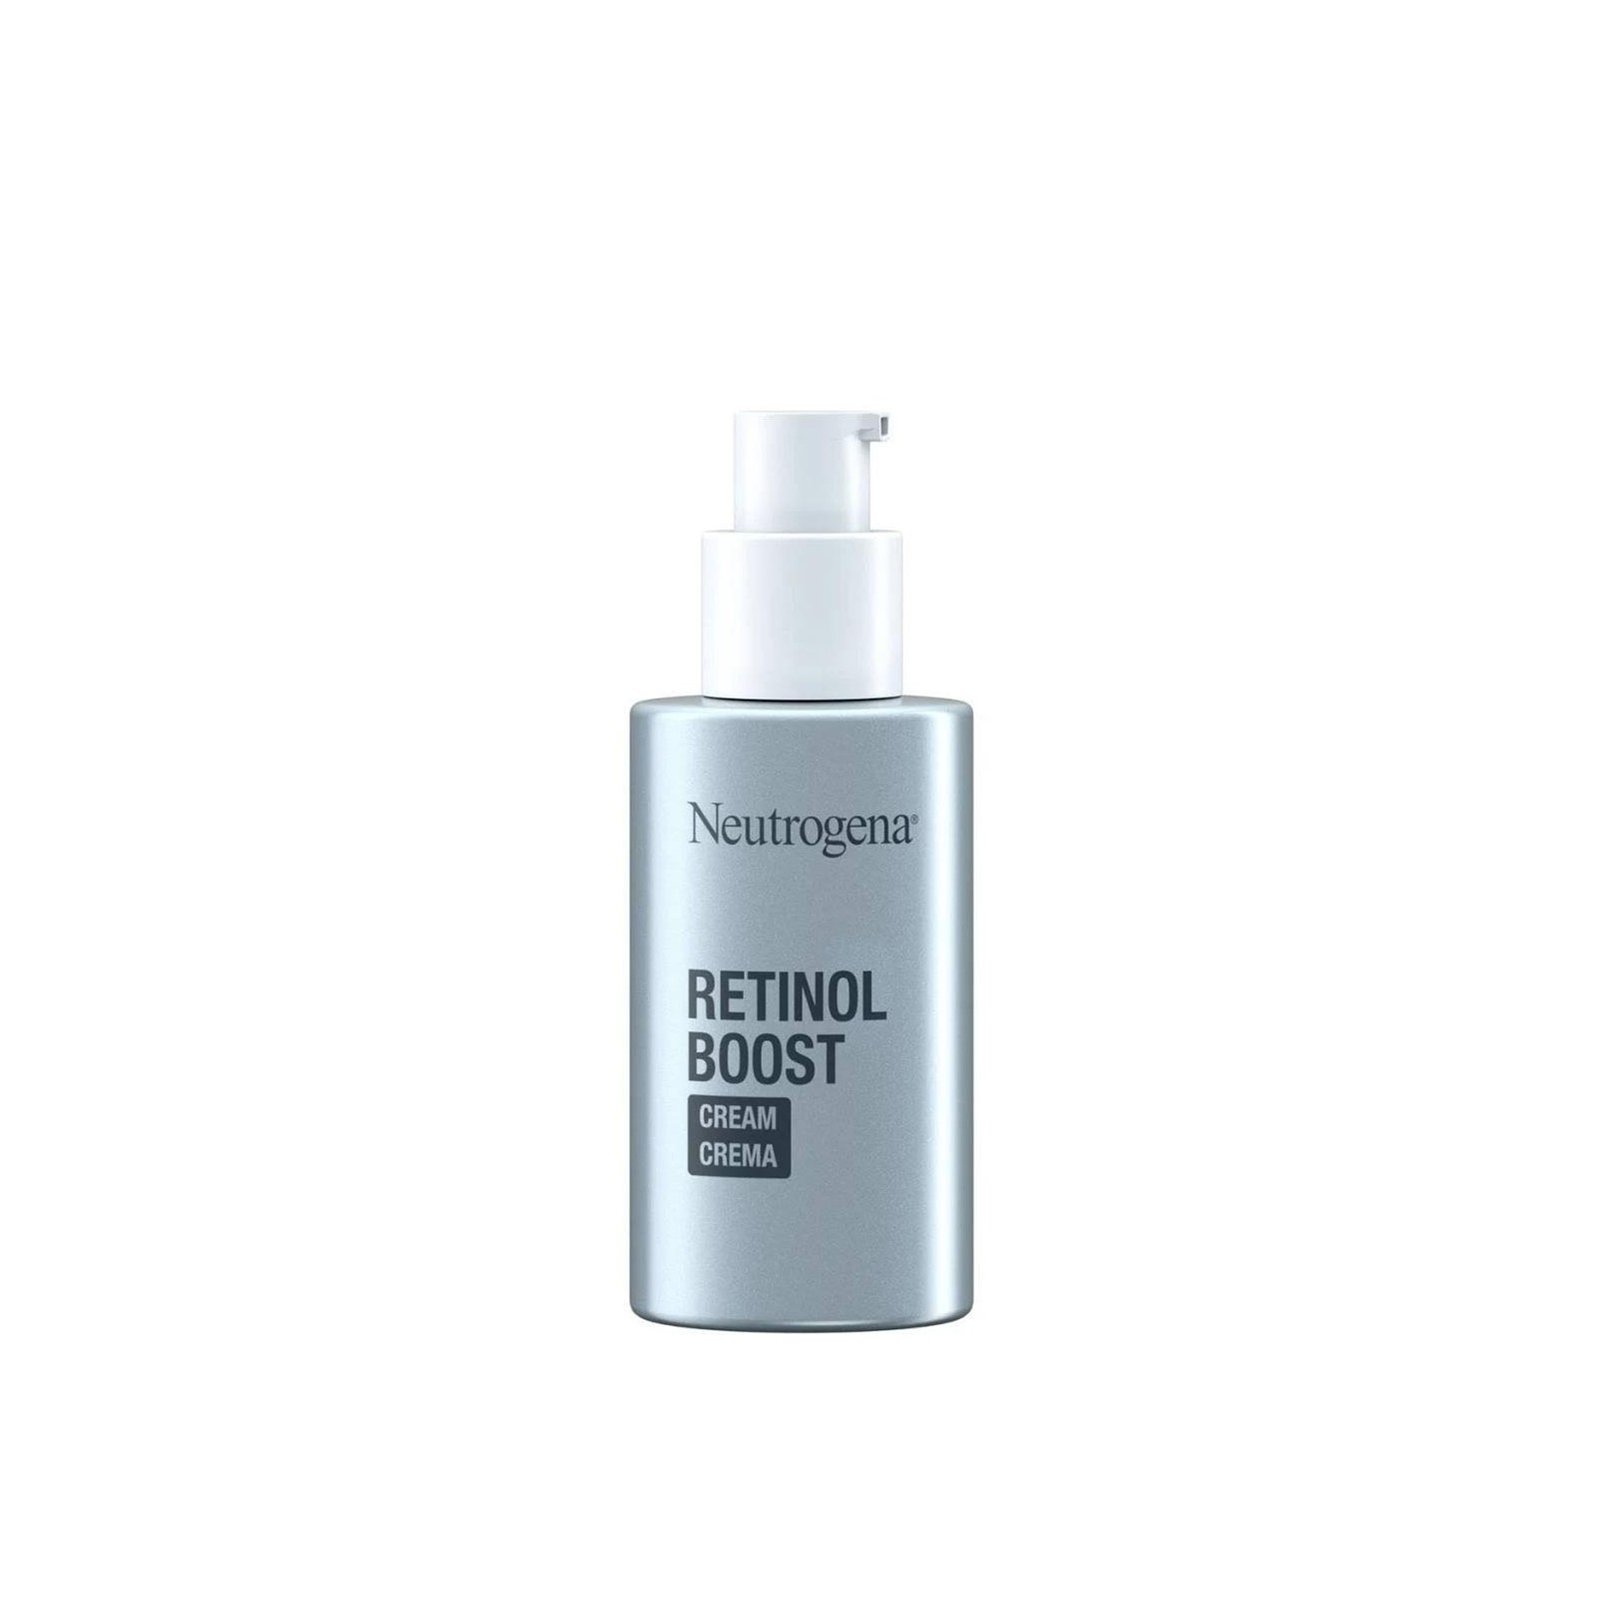 Neutrogena Retinol Boost Cream 50ml (1.69 fl oz)